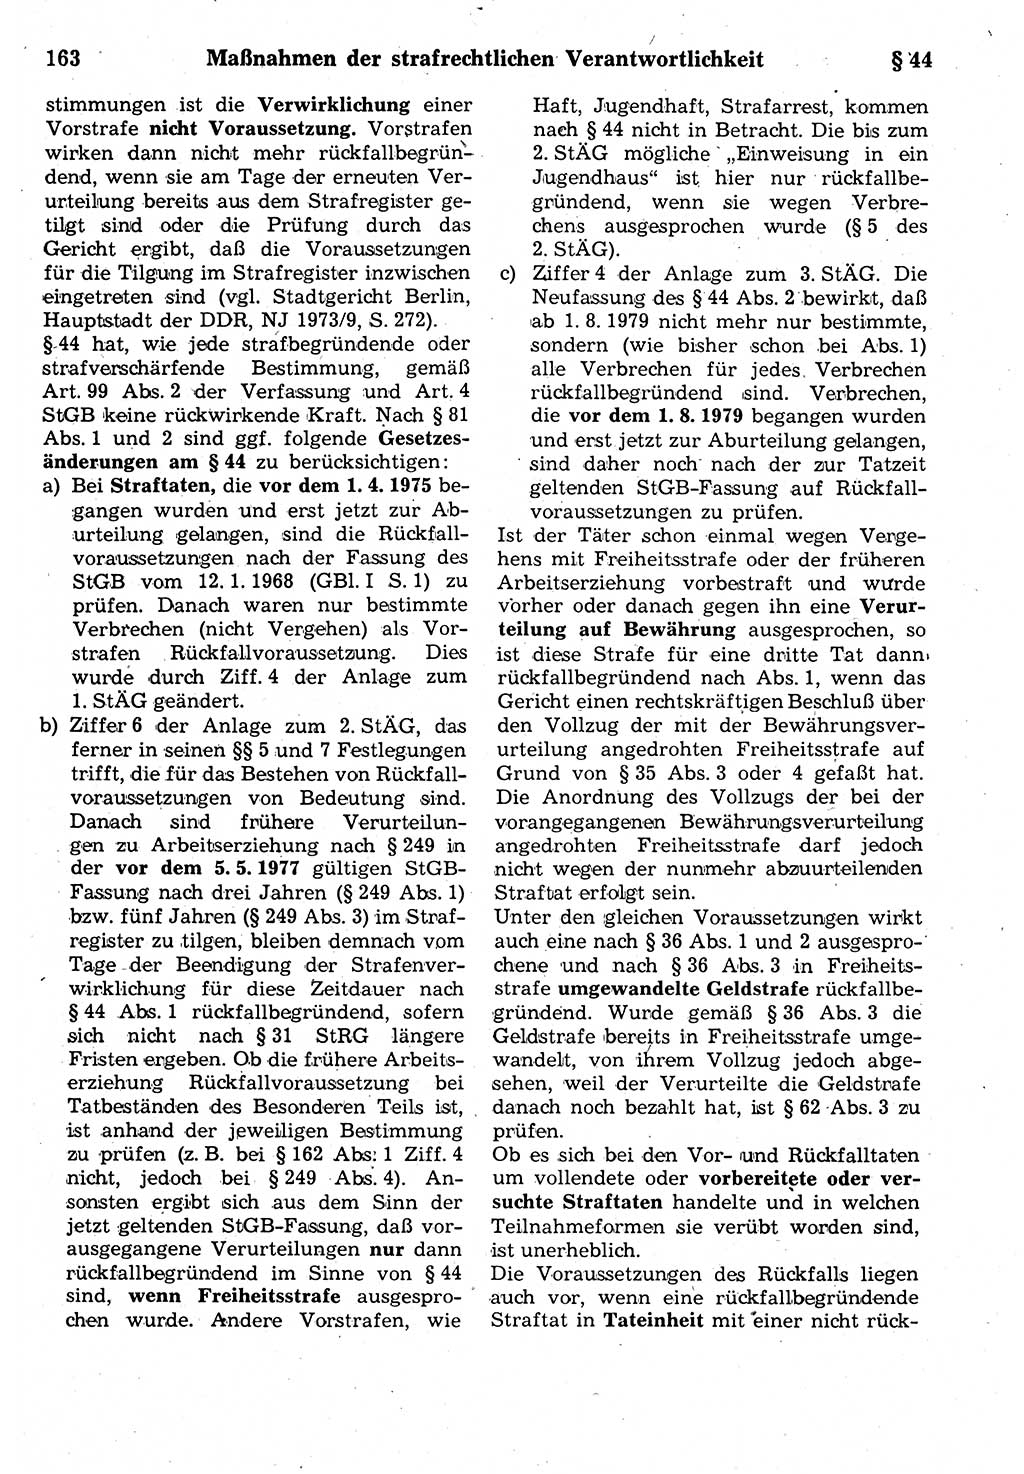 Strafrecht der Deutschen Demokratischen Republik (DDR), Kommentar zum Strafgesetzbuch (StGB) 1987, Seite 163 (Strafr. DDR Komm. StGB 1987, S. 163)